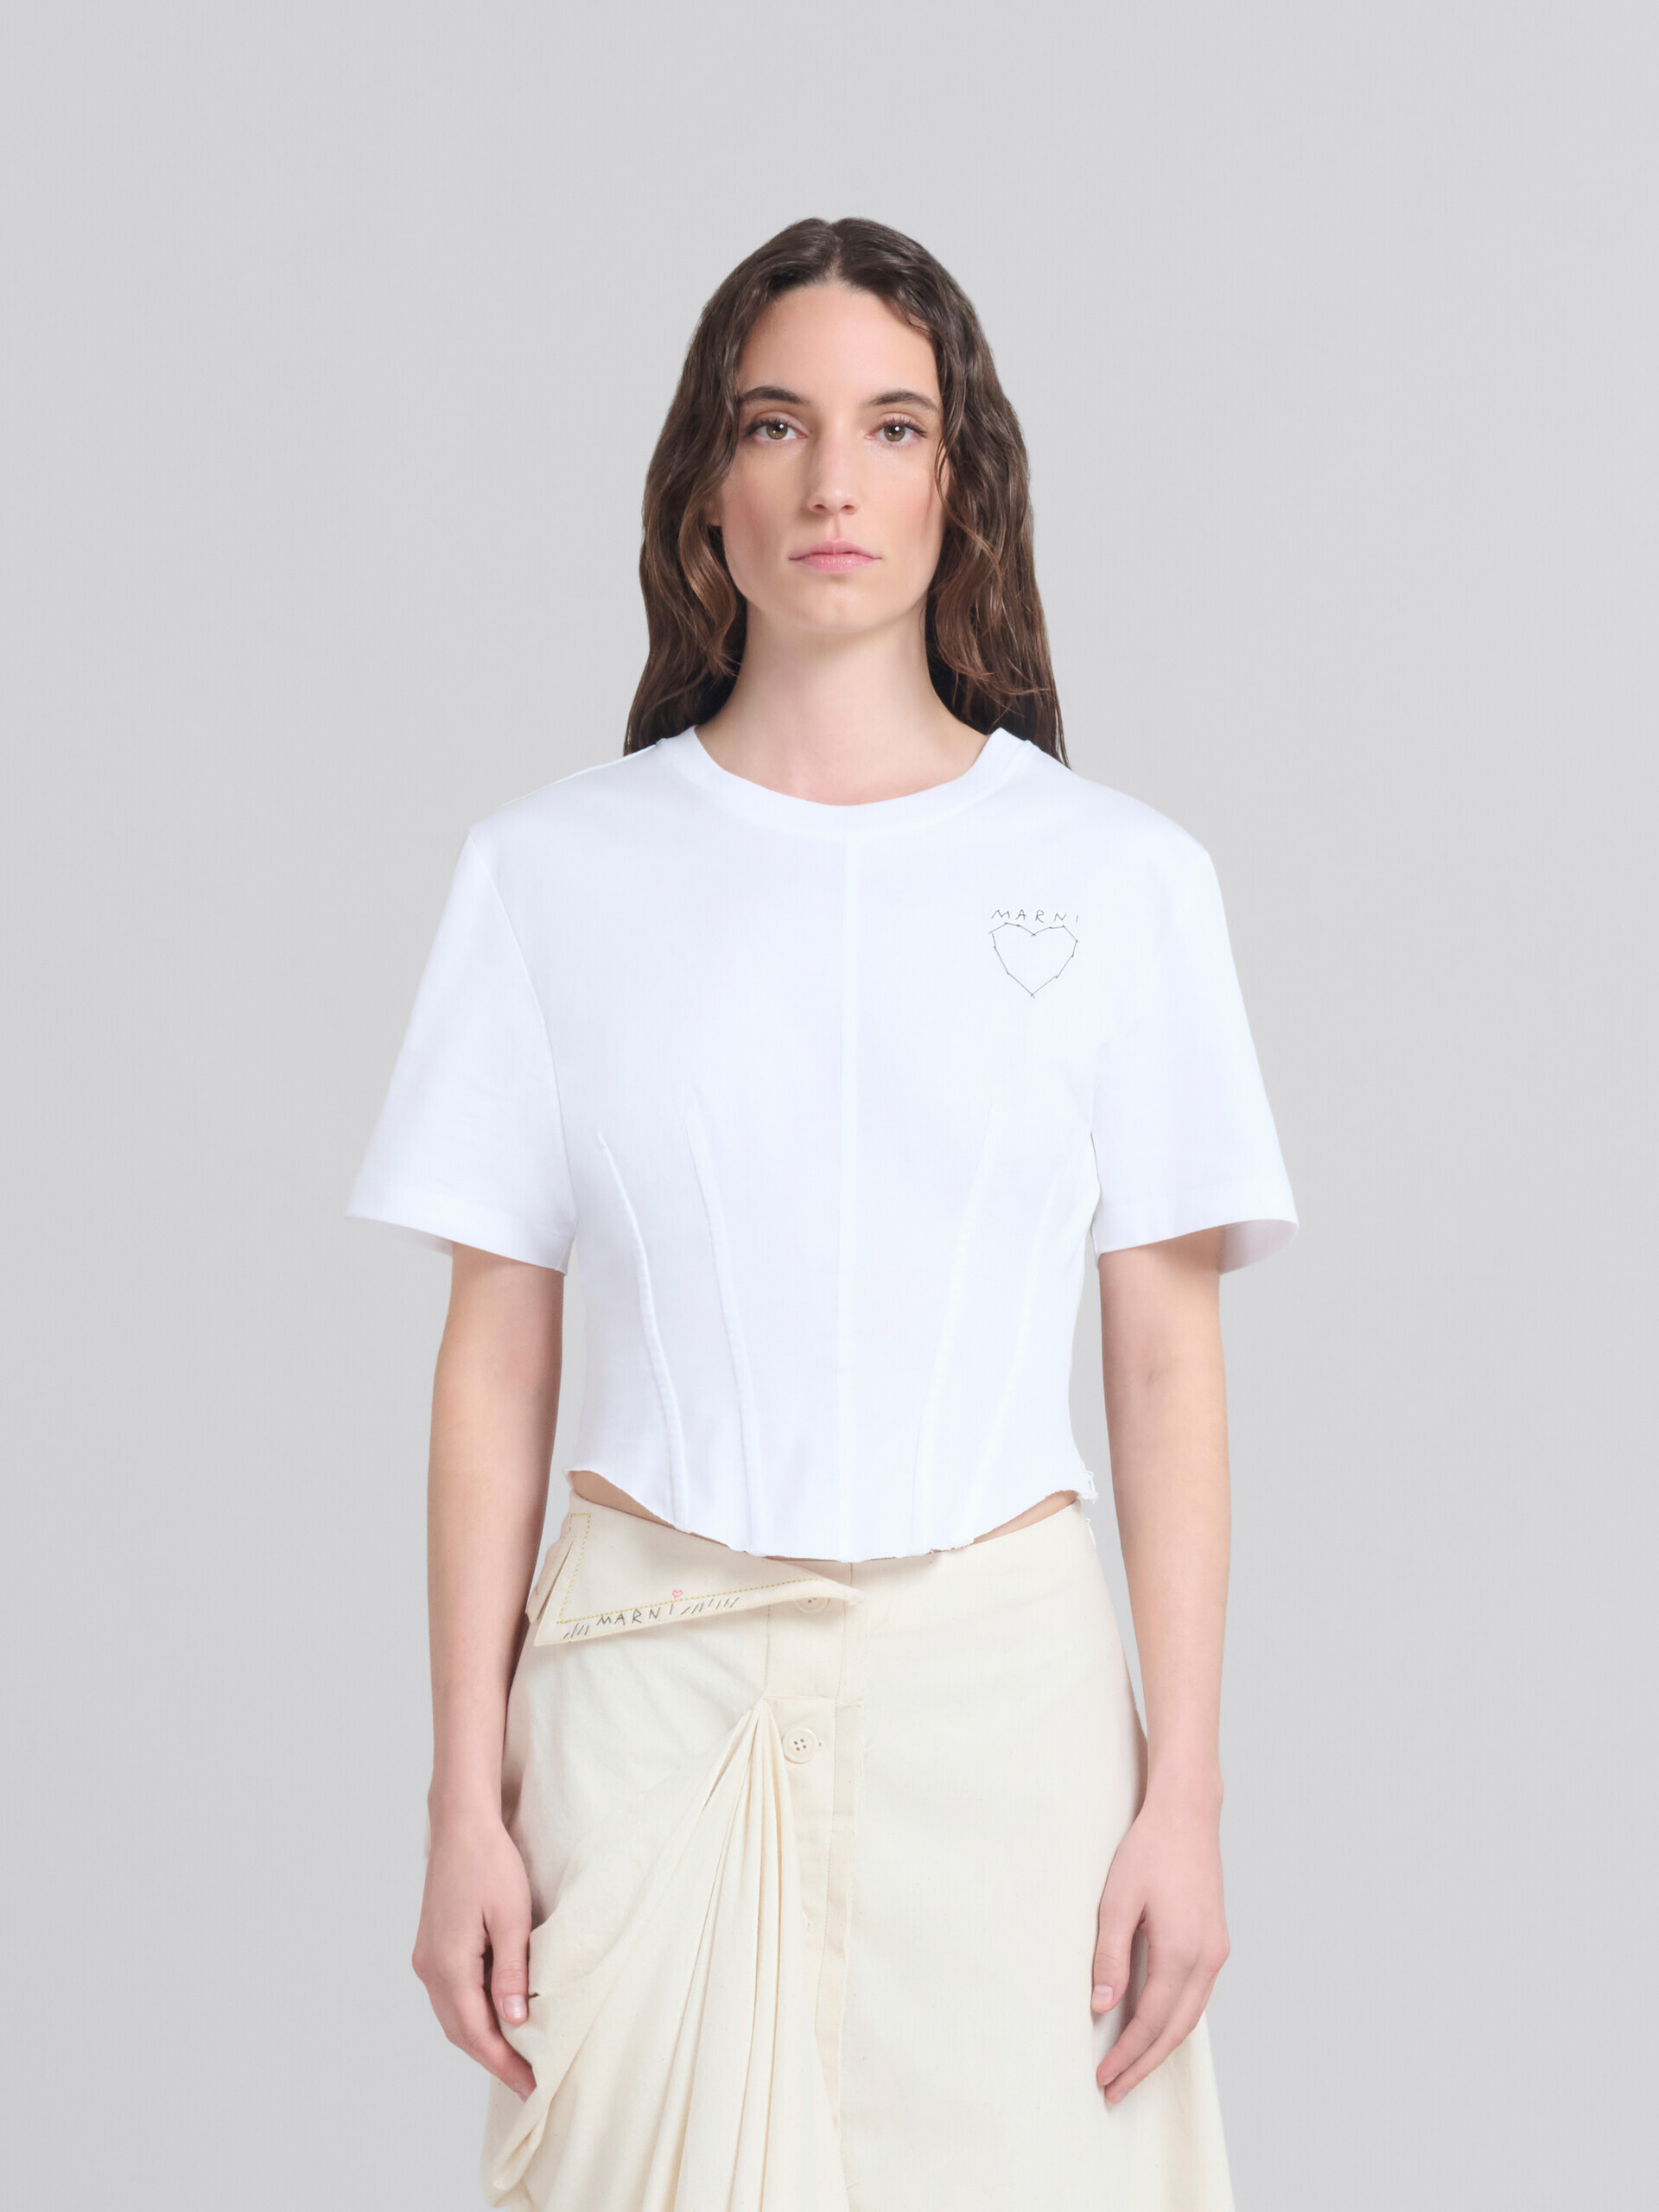 Camiseta bustier de algodón orgánico blanca - Camisetas - Image 1